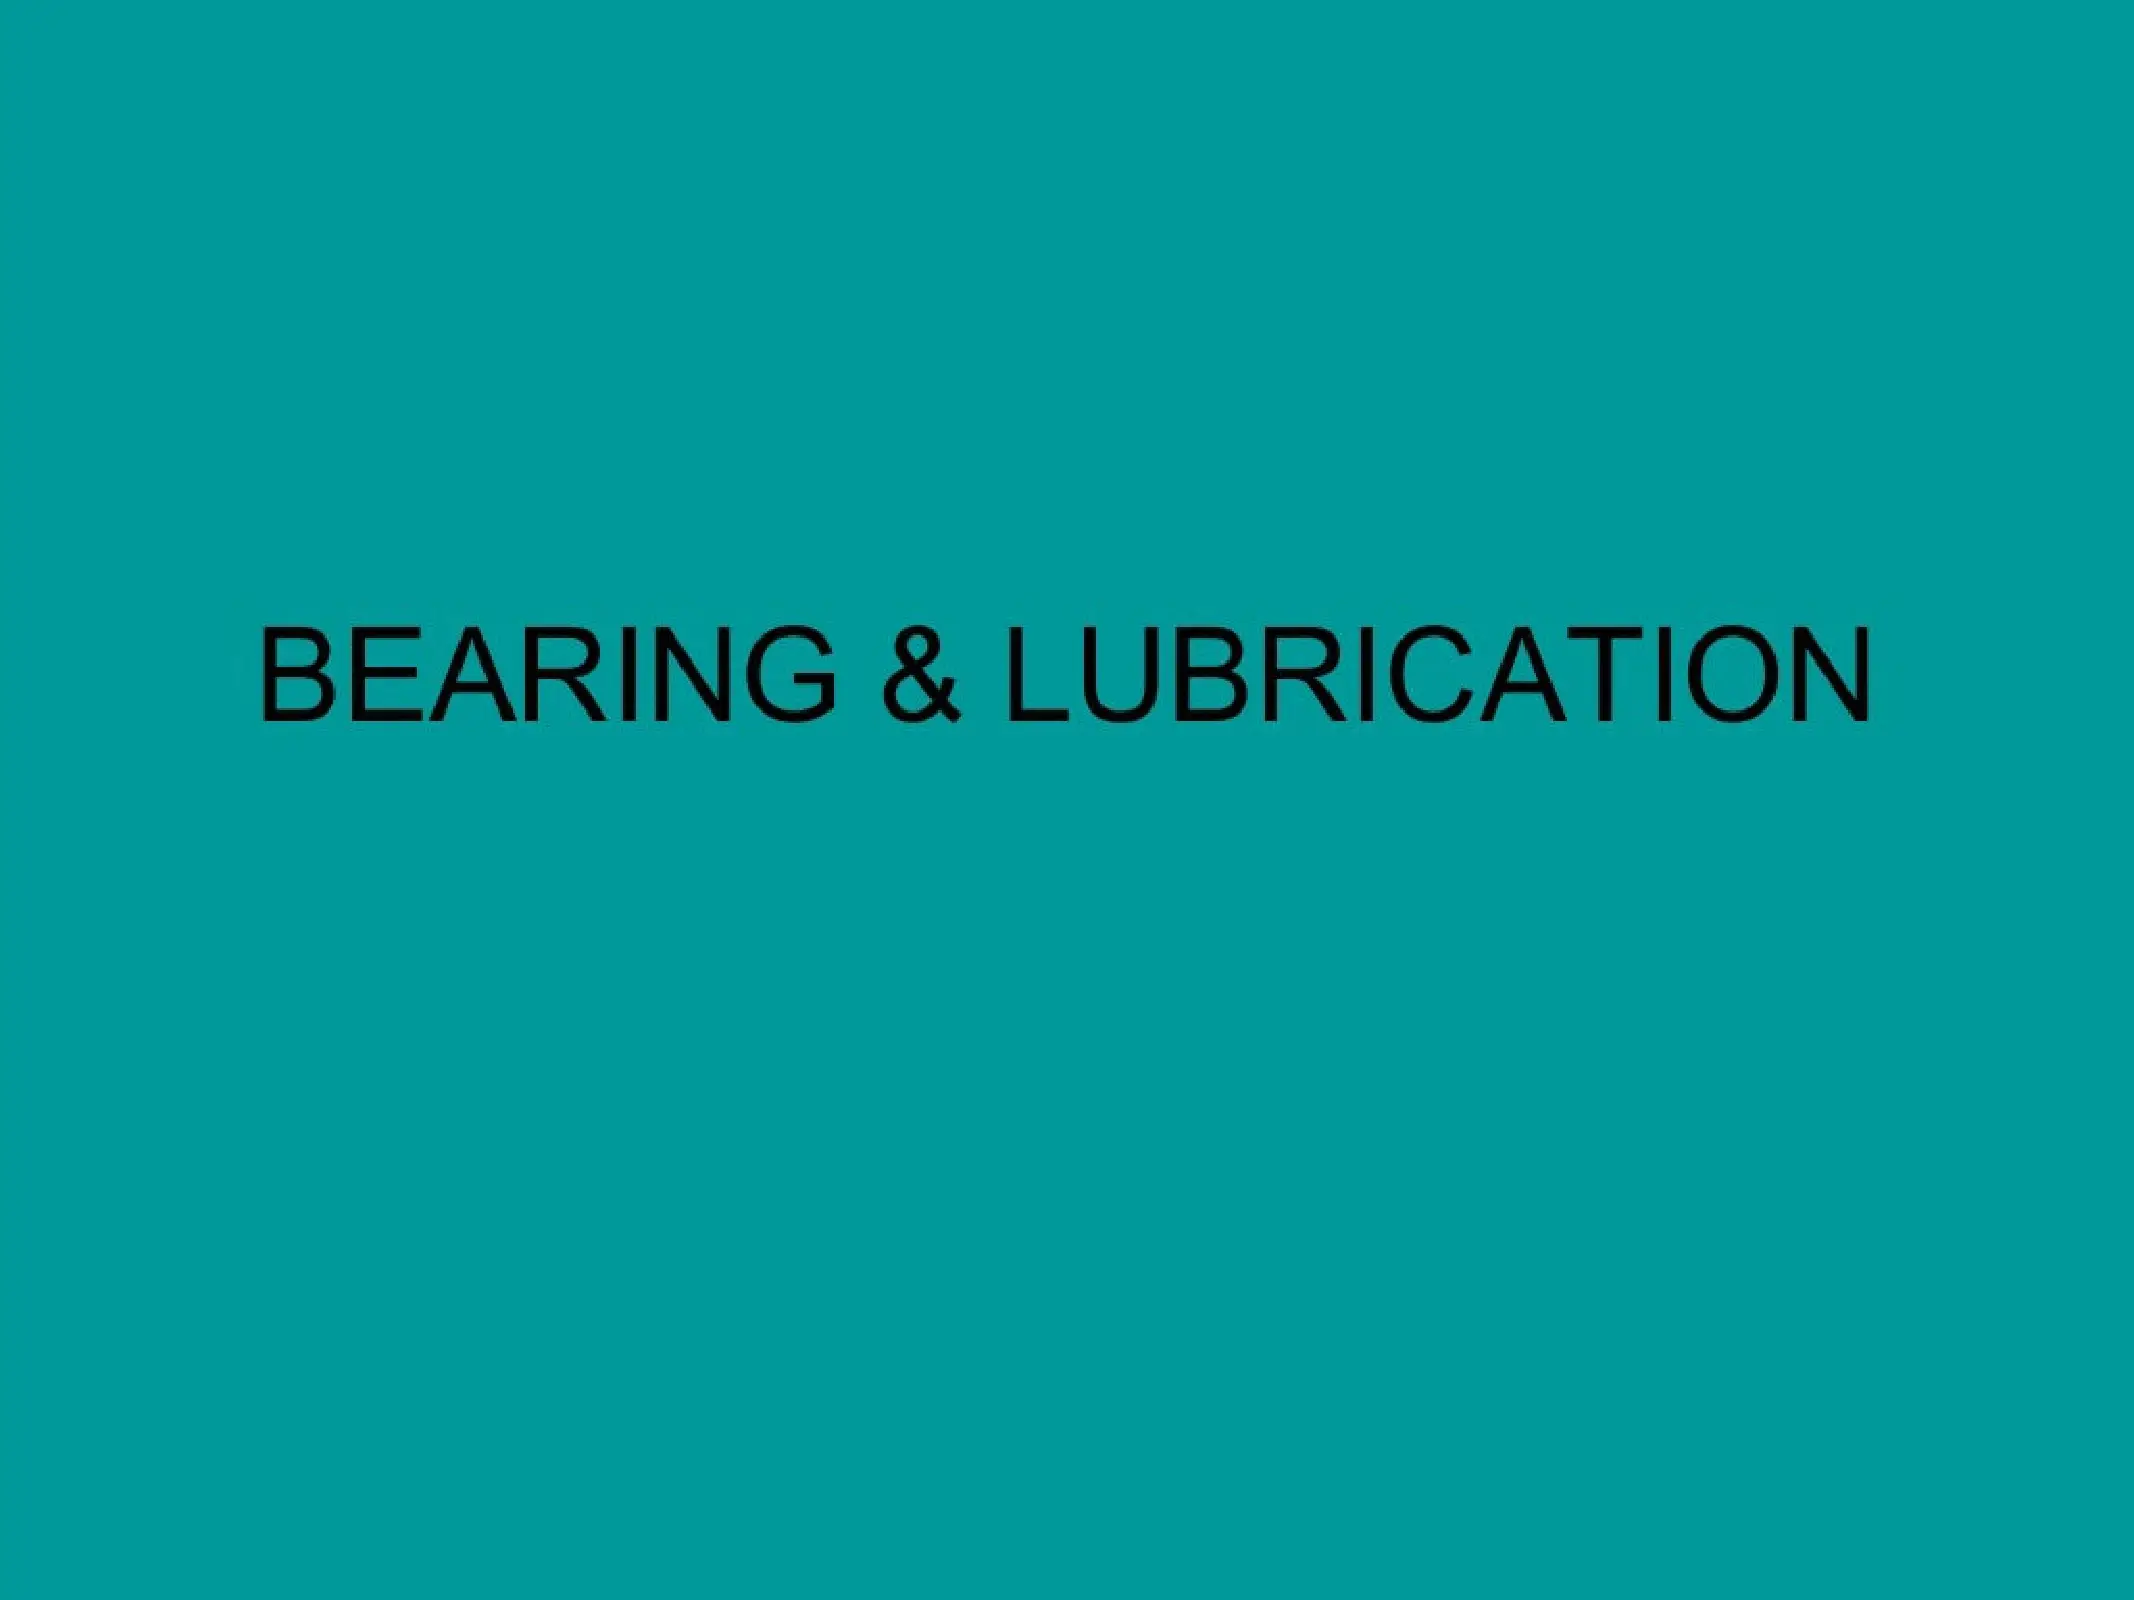 Bearing & Lubrication